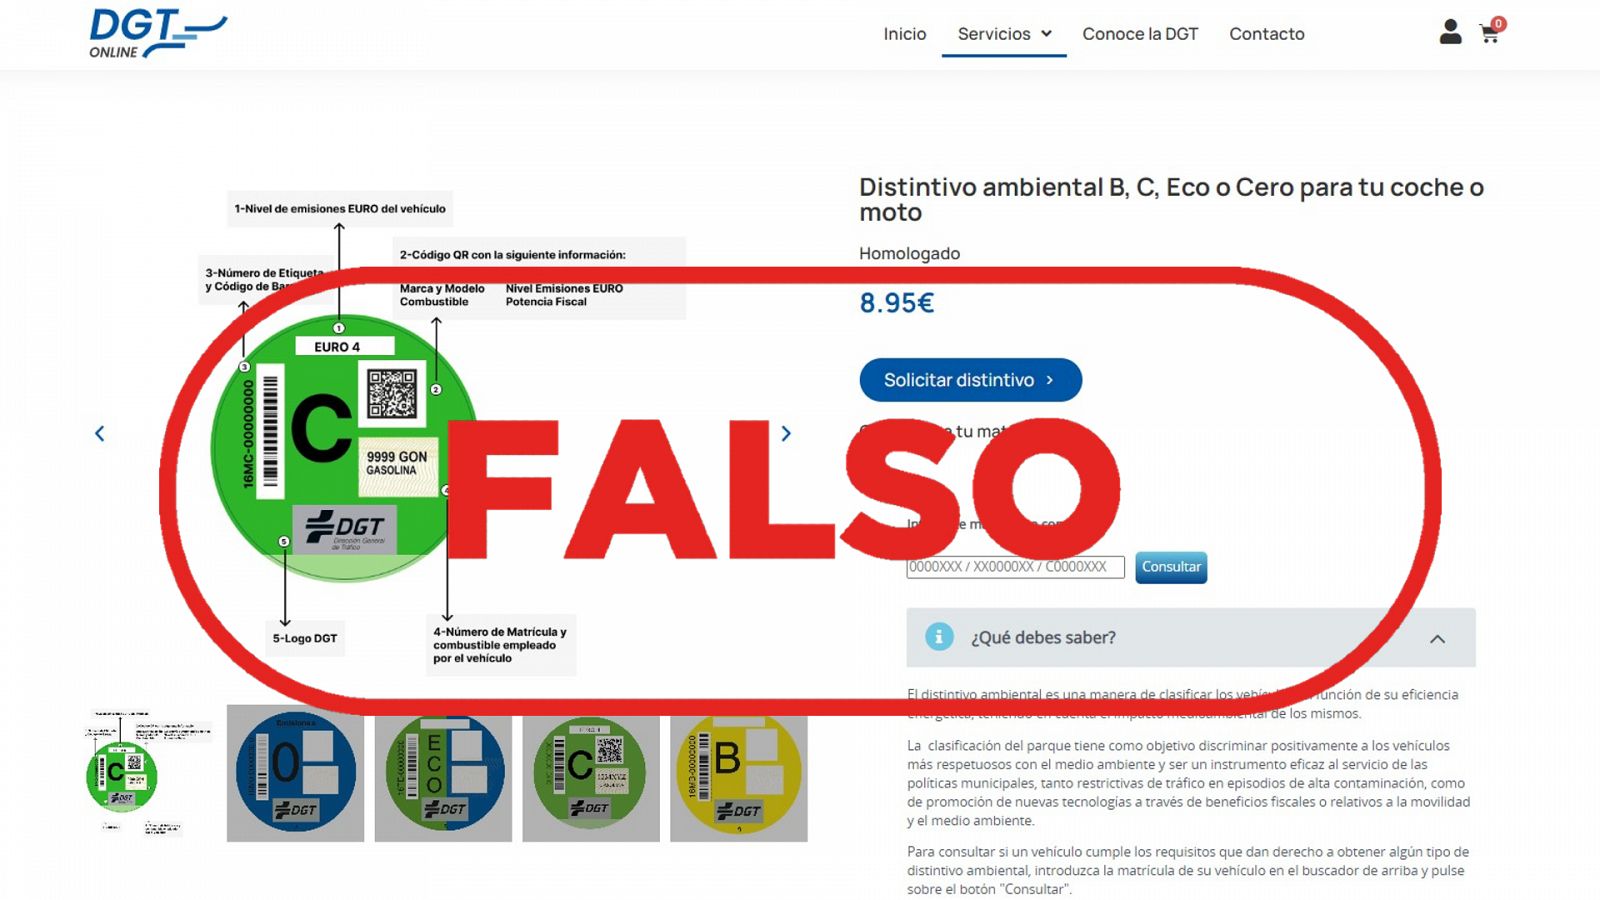 Imagen de la página web que suplanta a la DGT, con el sello 'Falso' en rojo de VerificaRTVE